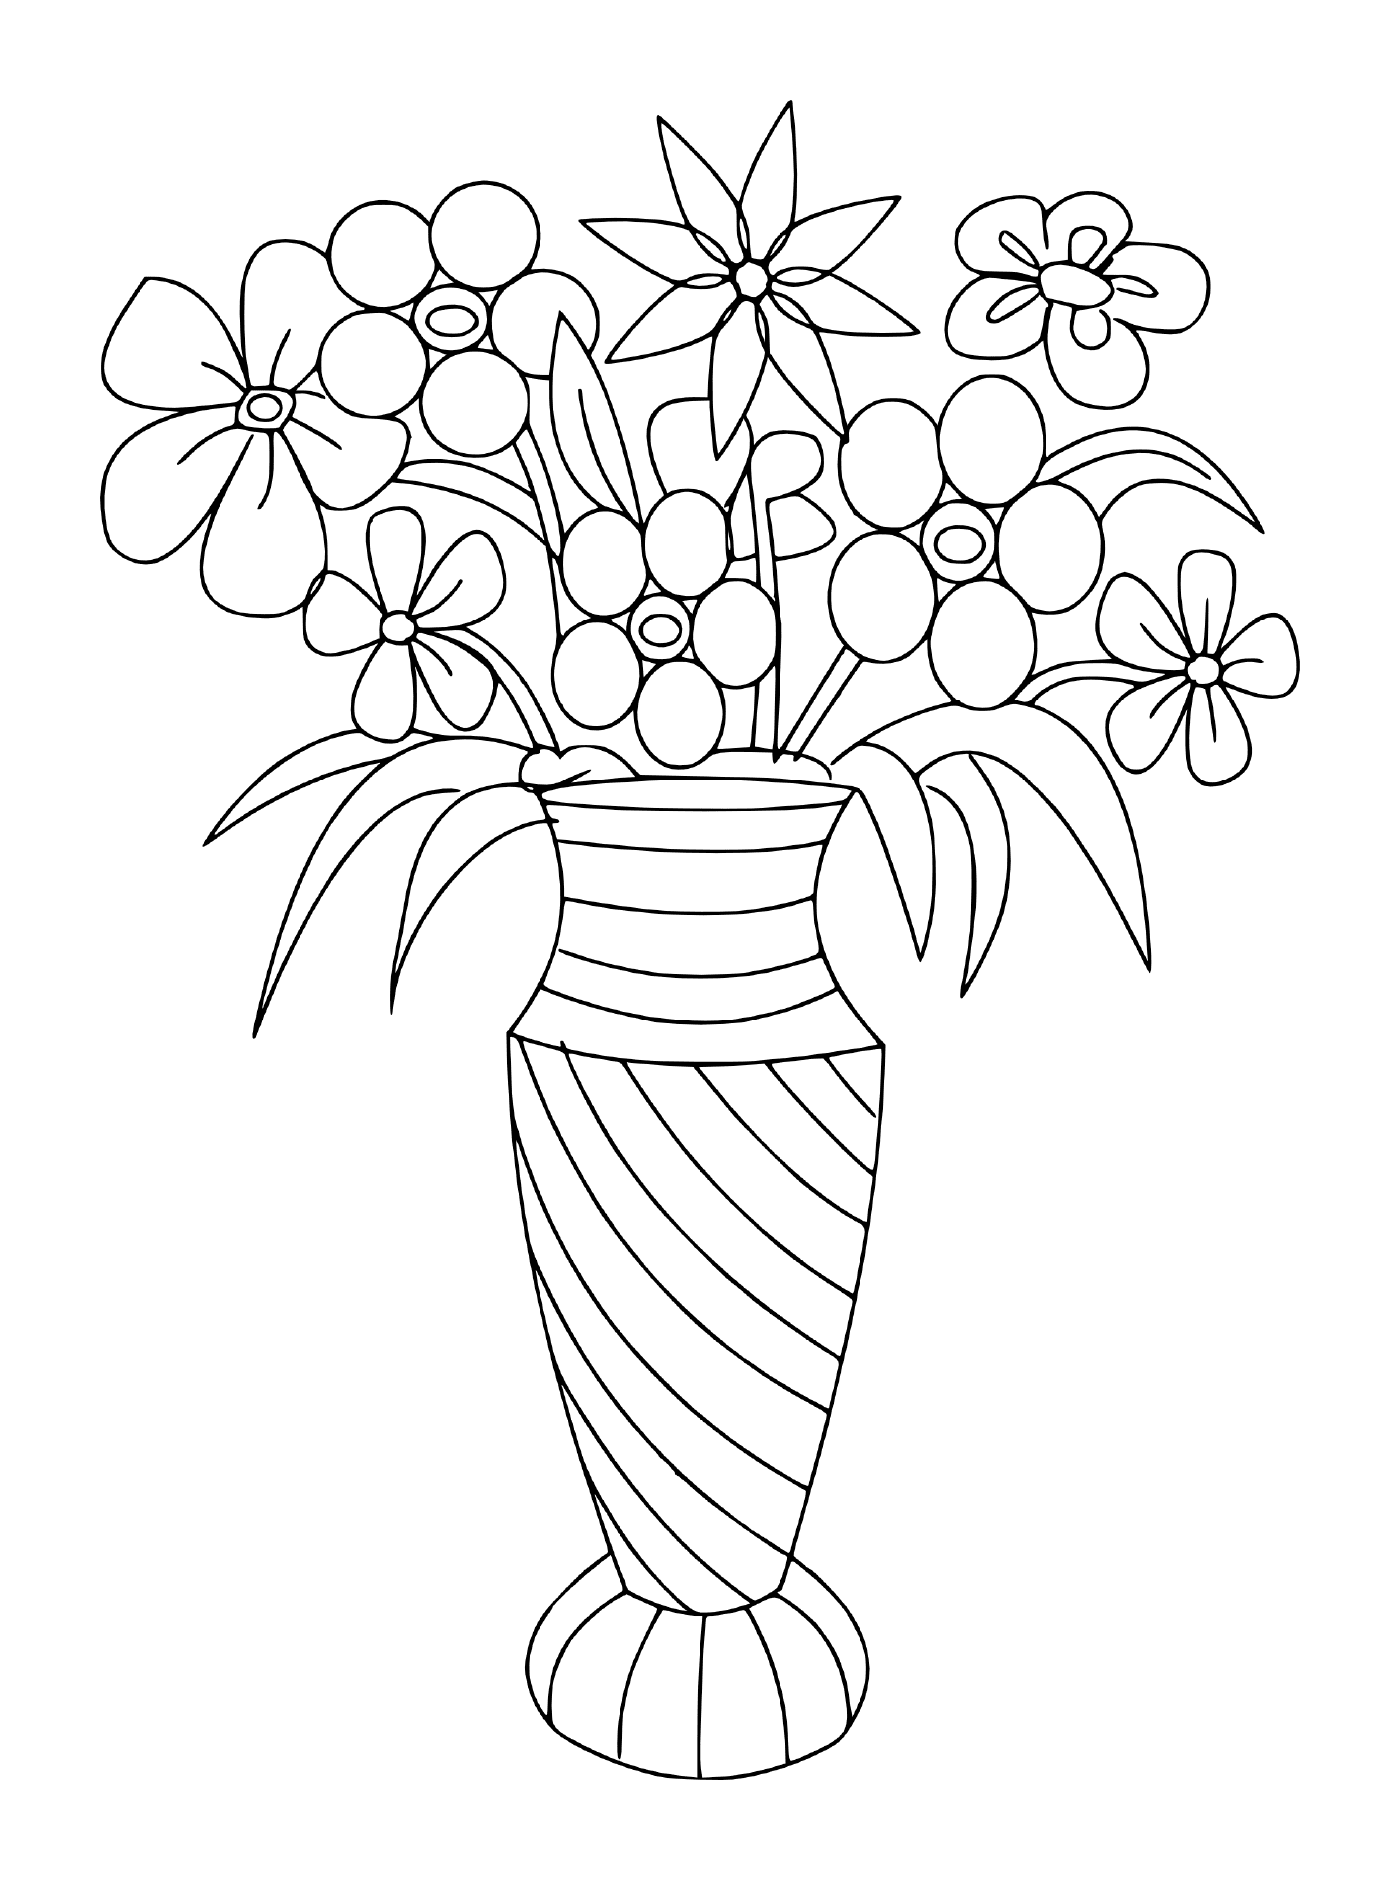  Ein Blumenstrauß in einem Topf 